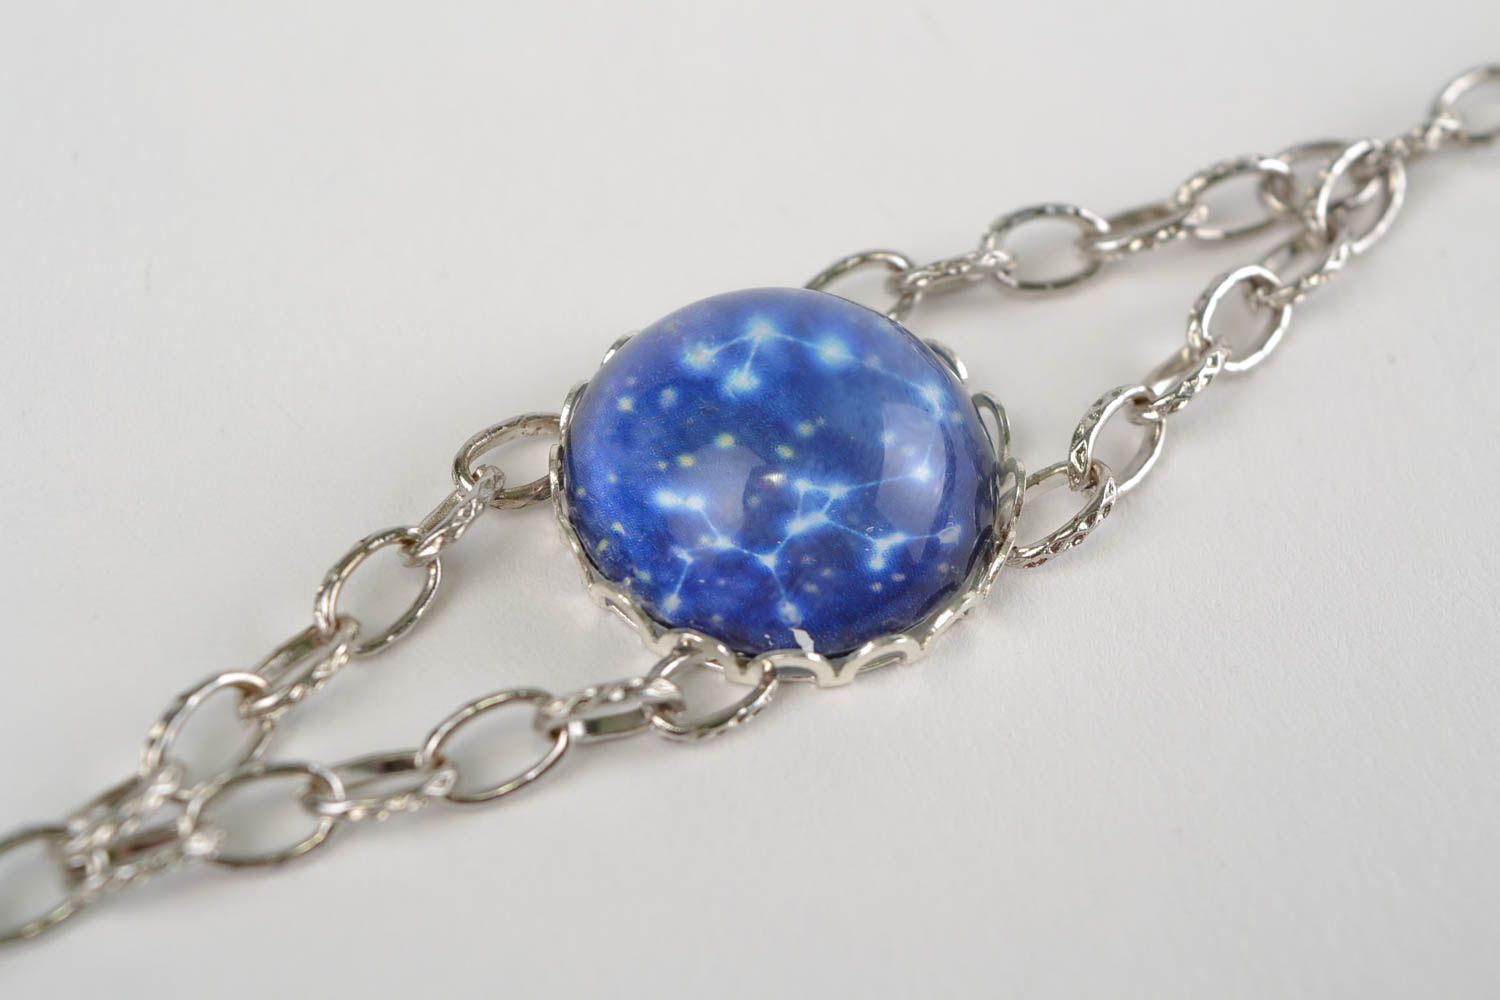 Zodiac wrist bracelet with chain and glass stylish handmade accessory photo 2